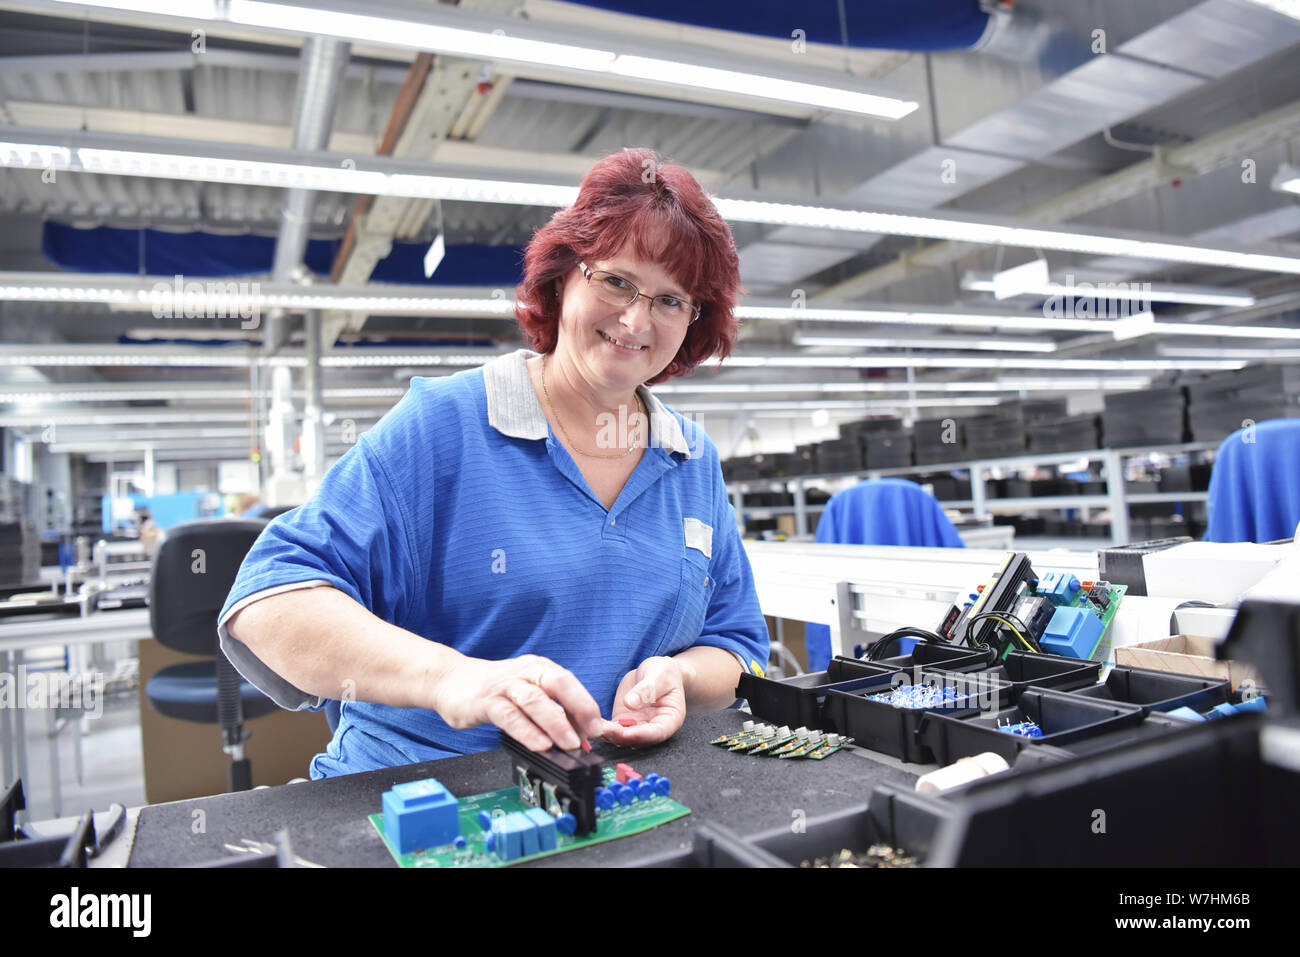 Freundliche Frau in einem mikroelektronikfertigung Factory-Komponenten Montage und Löten arbeiten Stockfoto